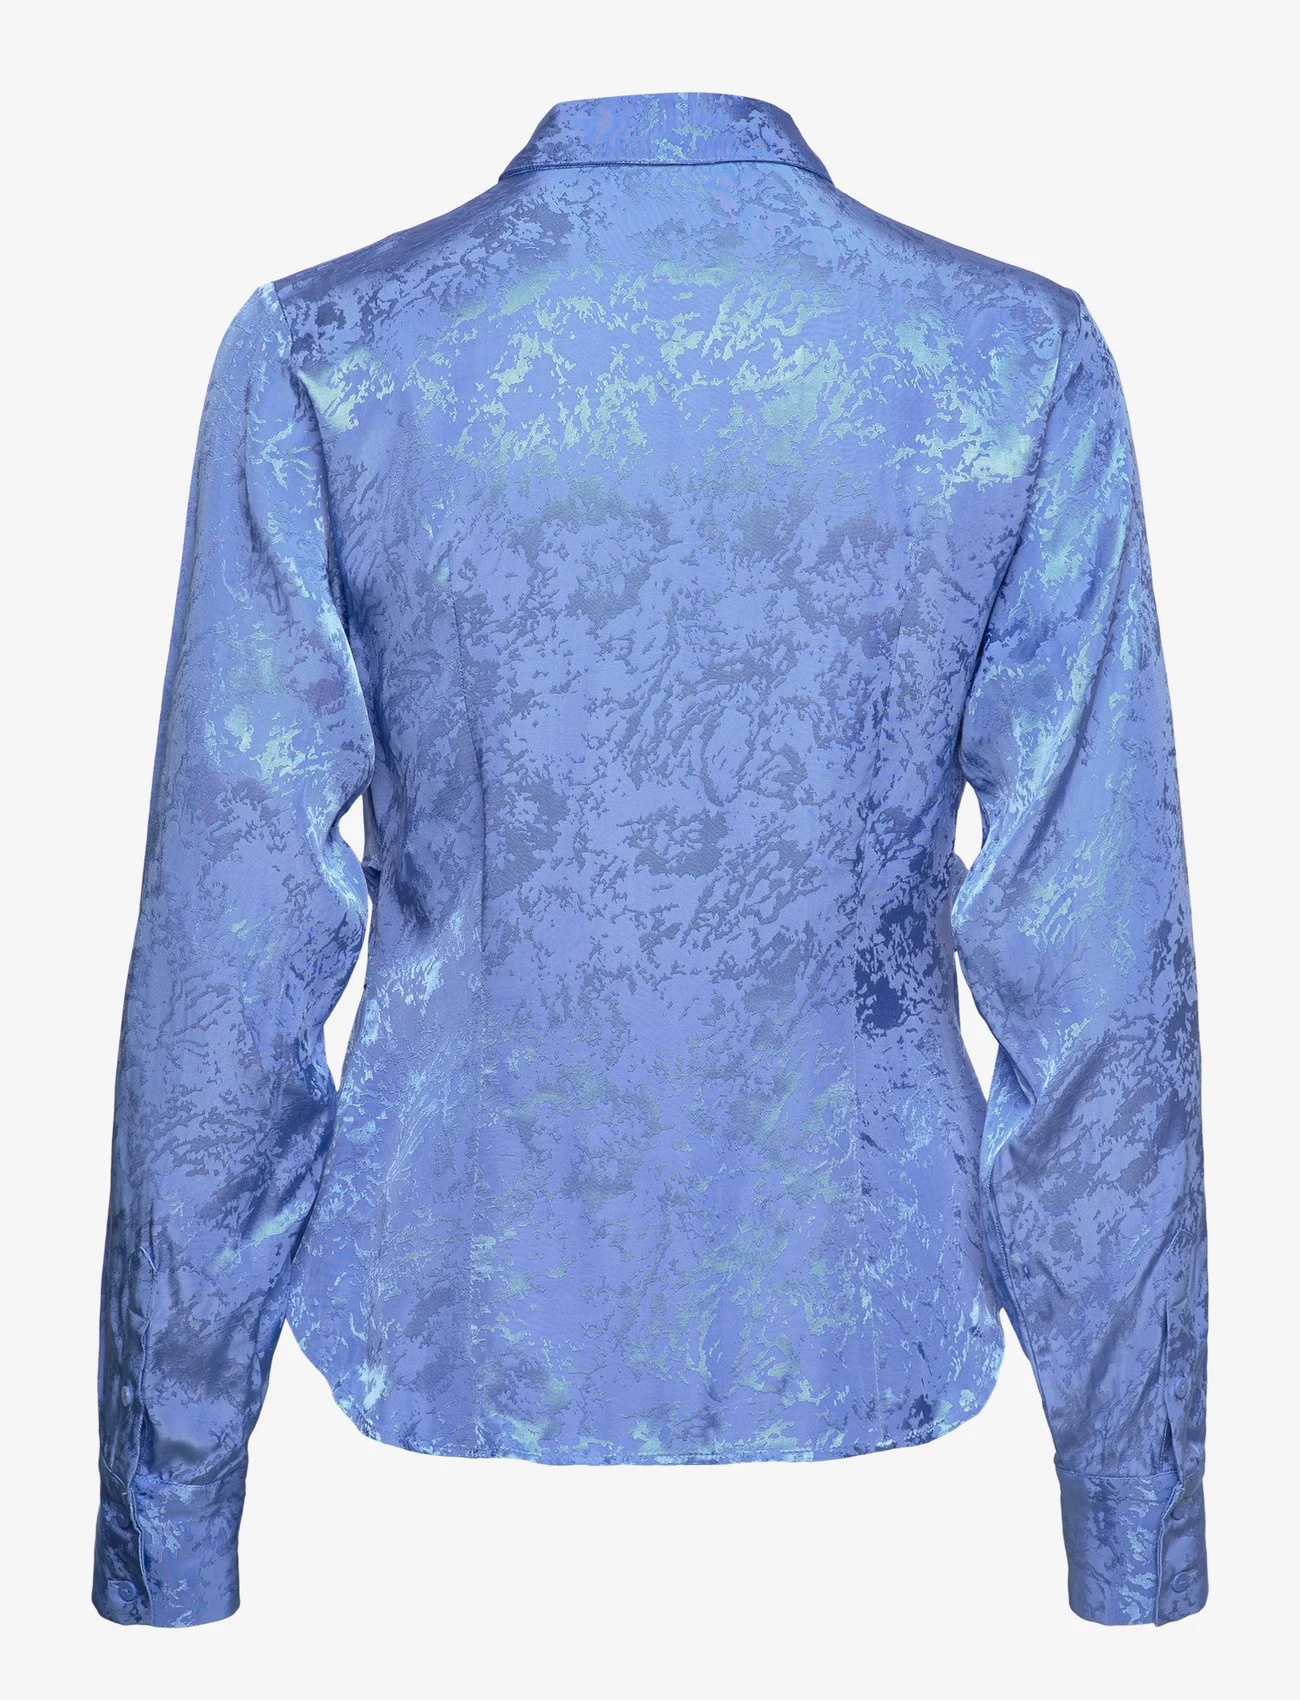 Selected Femme - SLFBLUE LS SHIRT B - langärmlige hemden - ultramarine - 1